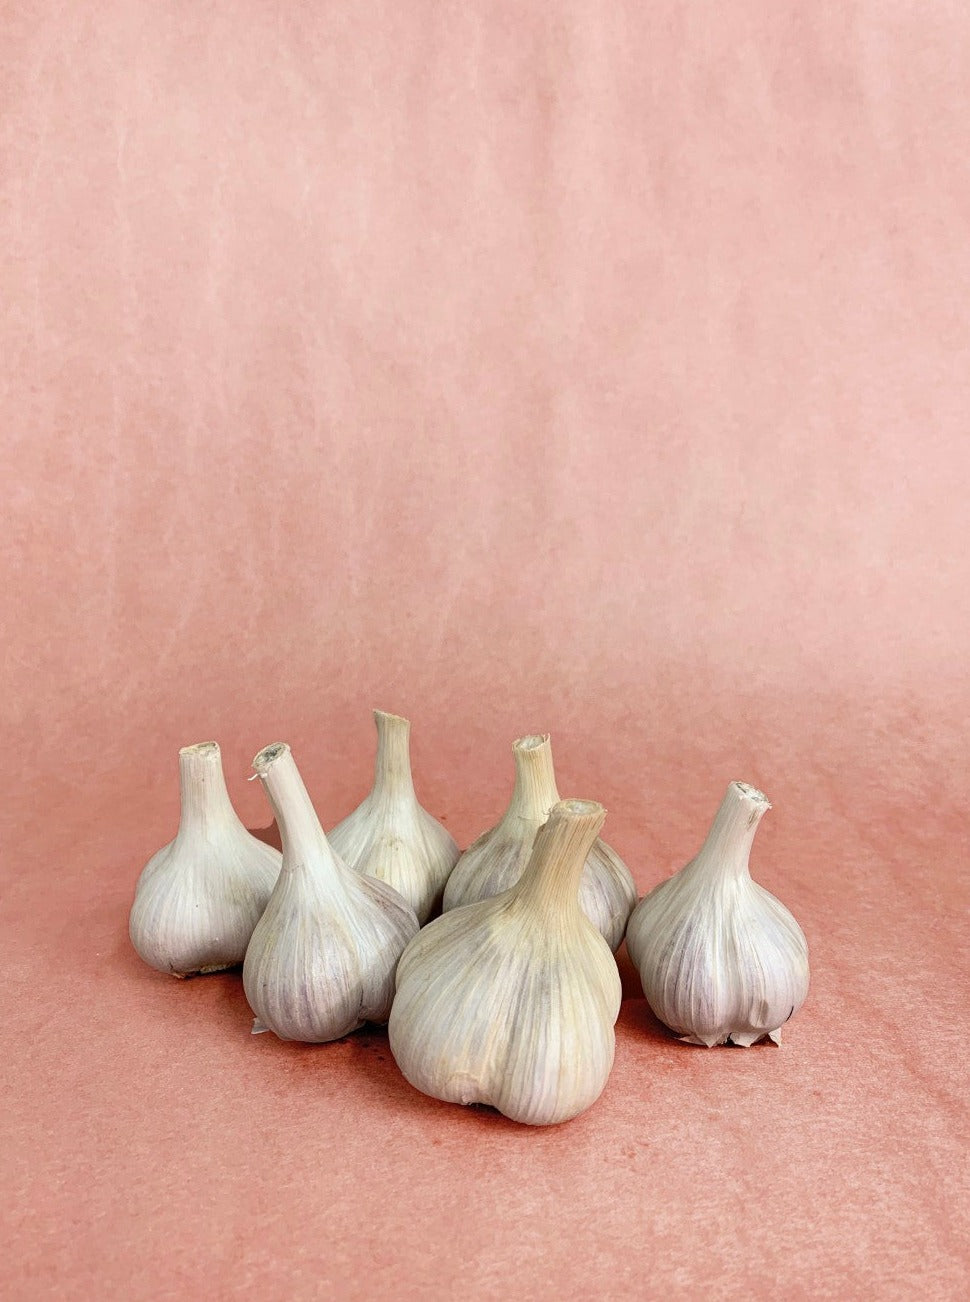 garlic bulb, by the 100g